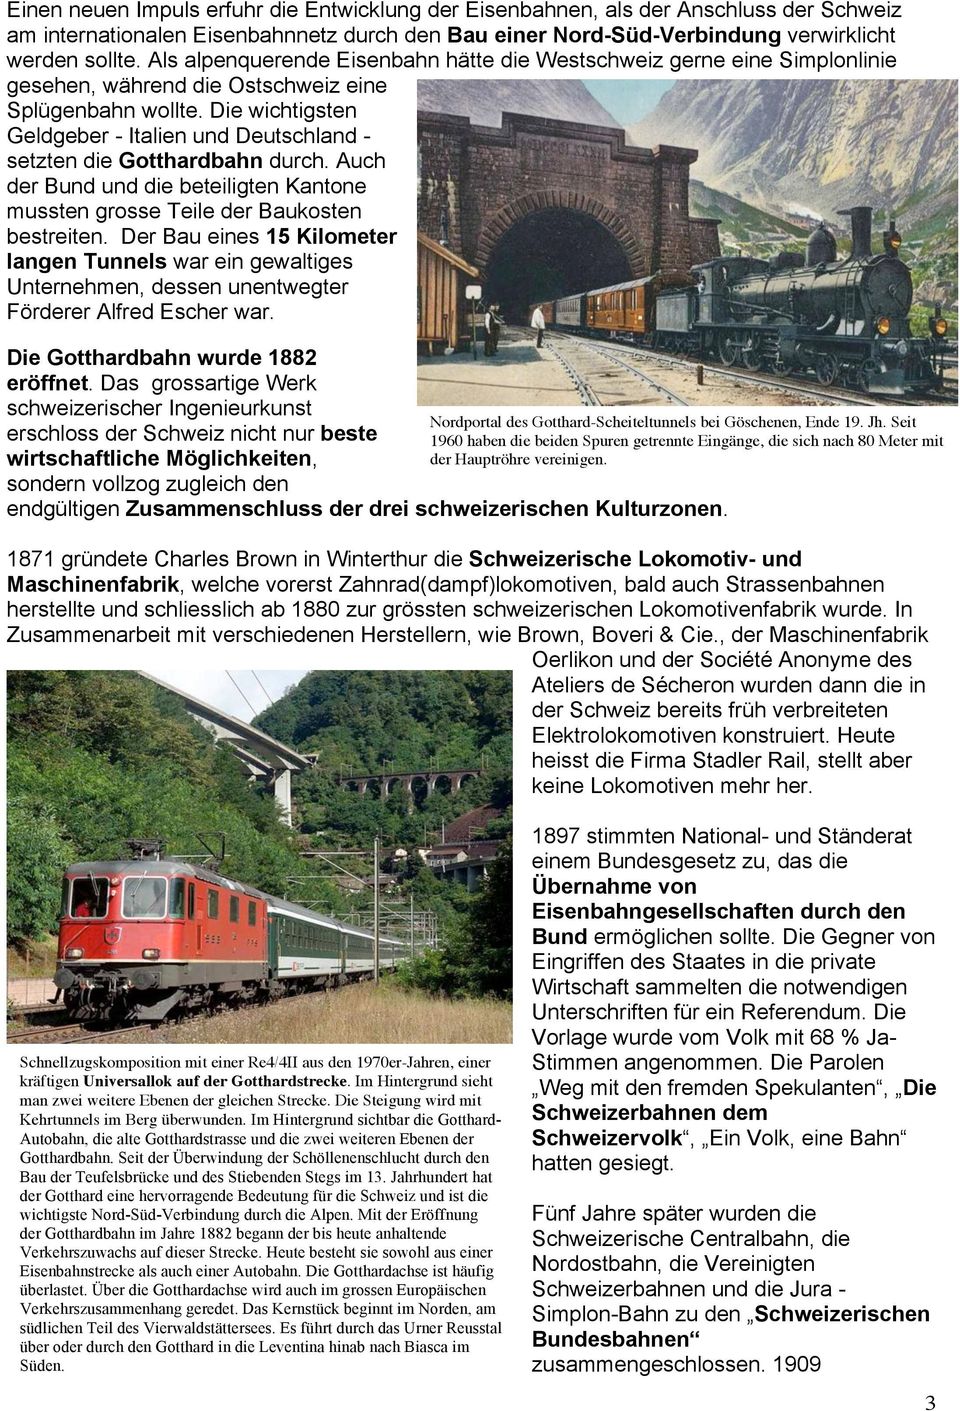 Die wichtigsten Geldgeber - Italien und Deutschland - setzten die Gotthardbahn durch. Auch der Bund und die beteiligten Kantone mussten grosse Teile der Baukosten bestreiten.